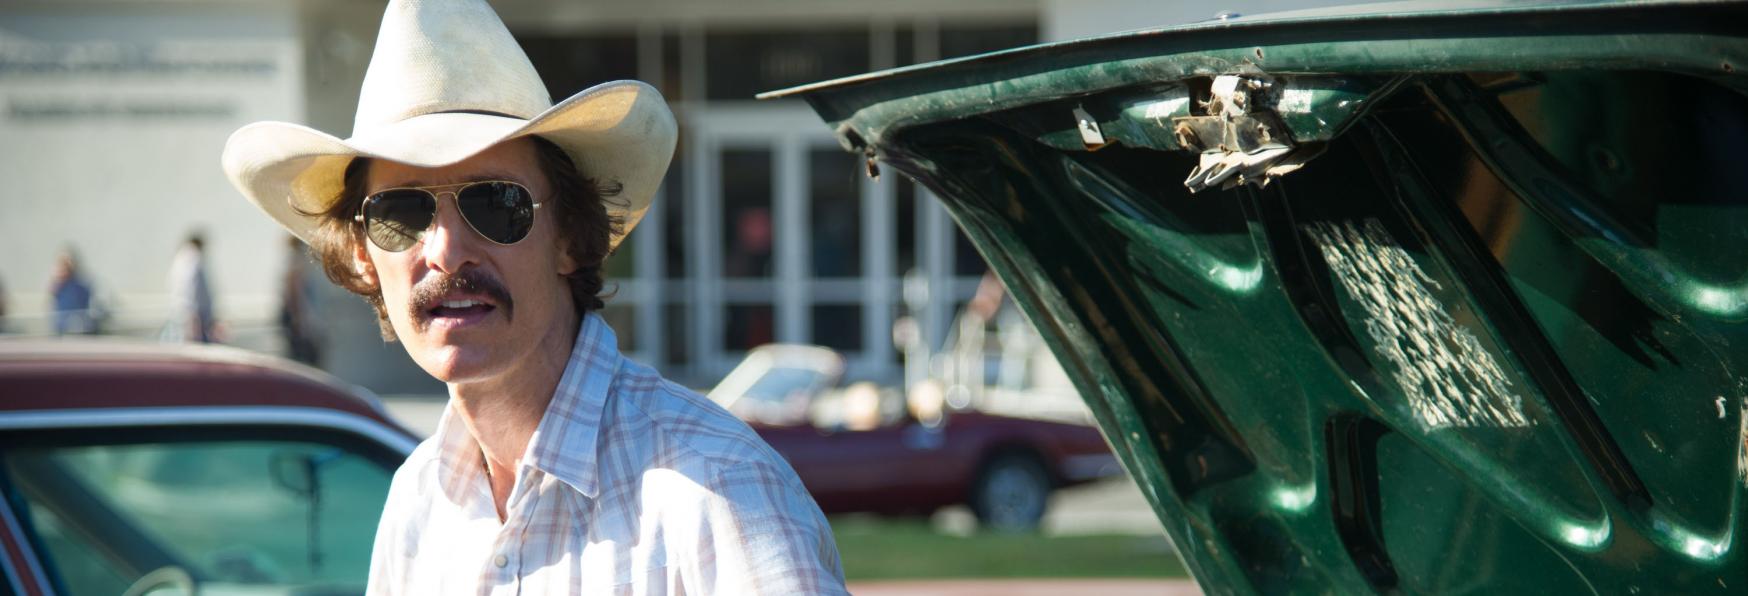 Yellowstone: confermato lo Spin-off della Serie TV con Protagonista Mattew McConaughey